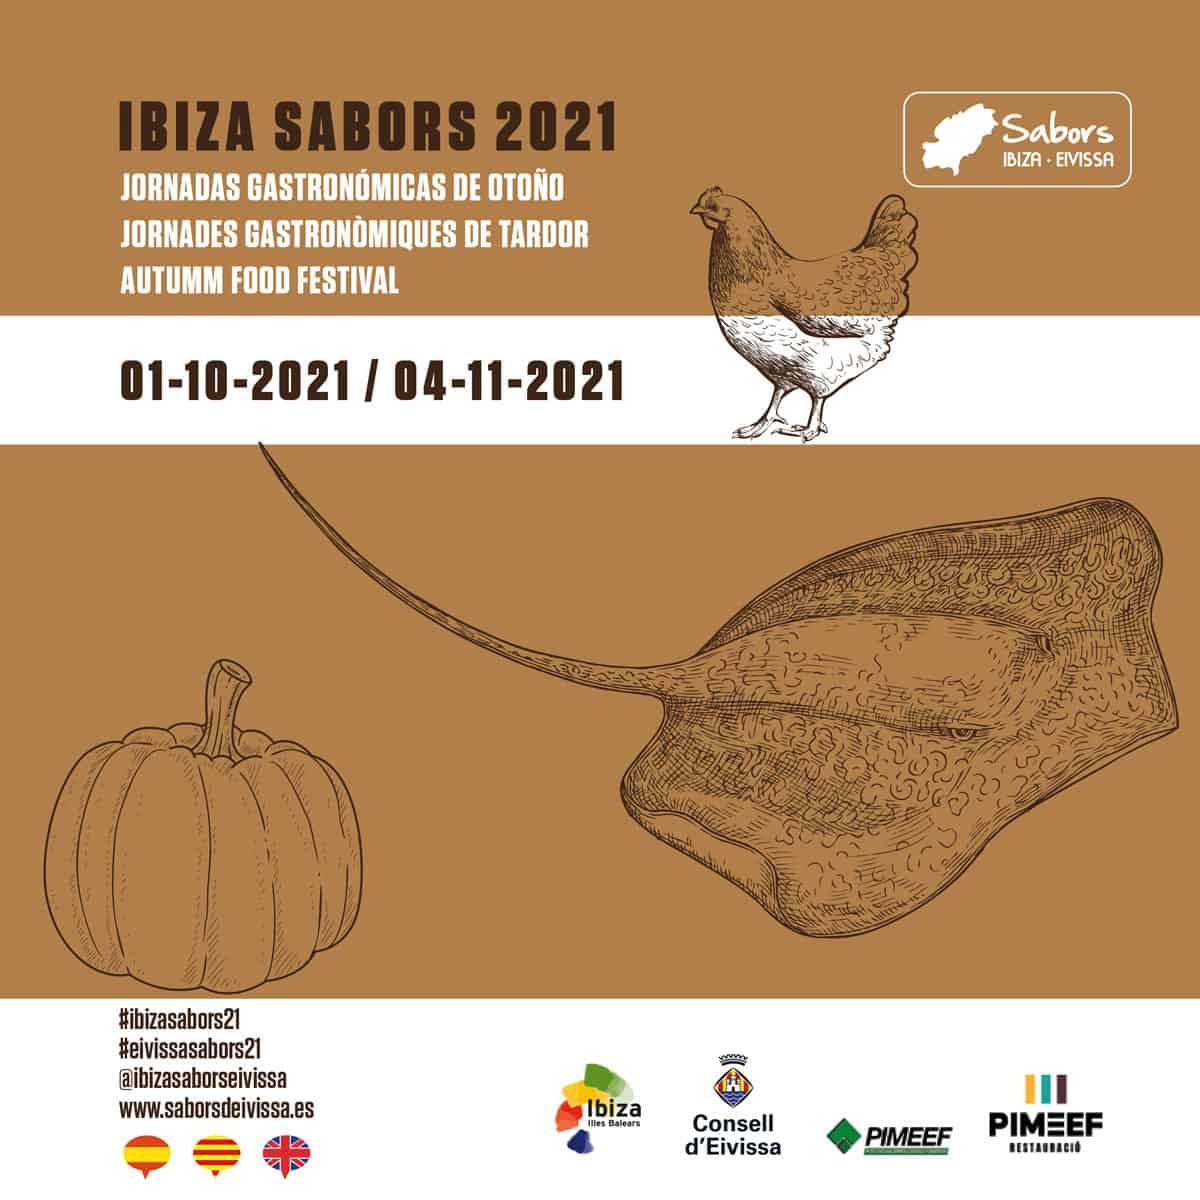 gastronomische-dagen-herfst-ibiza-sabors-2021-welcometoibiza